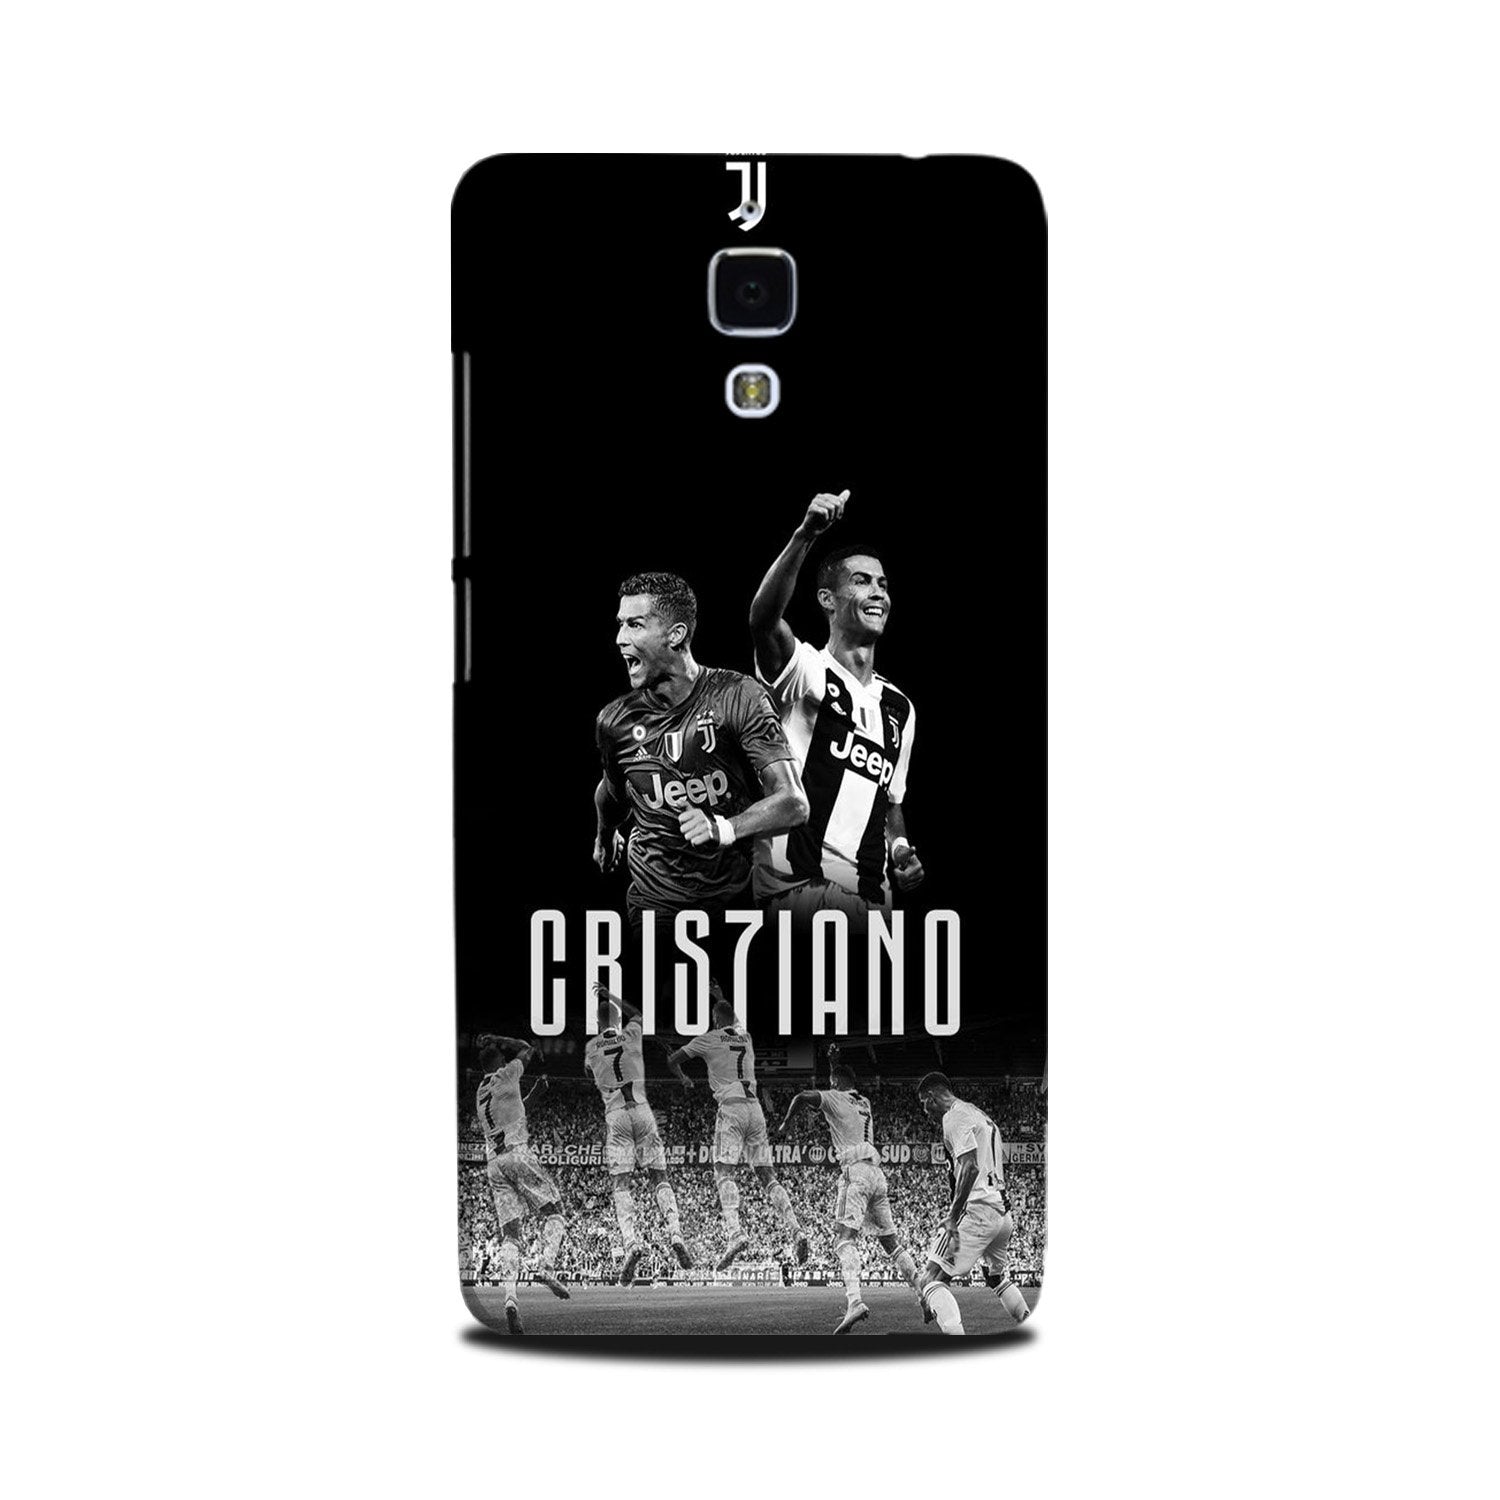 Cristiano Case for Mi 4(Design - 165)